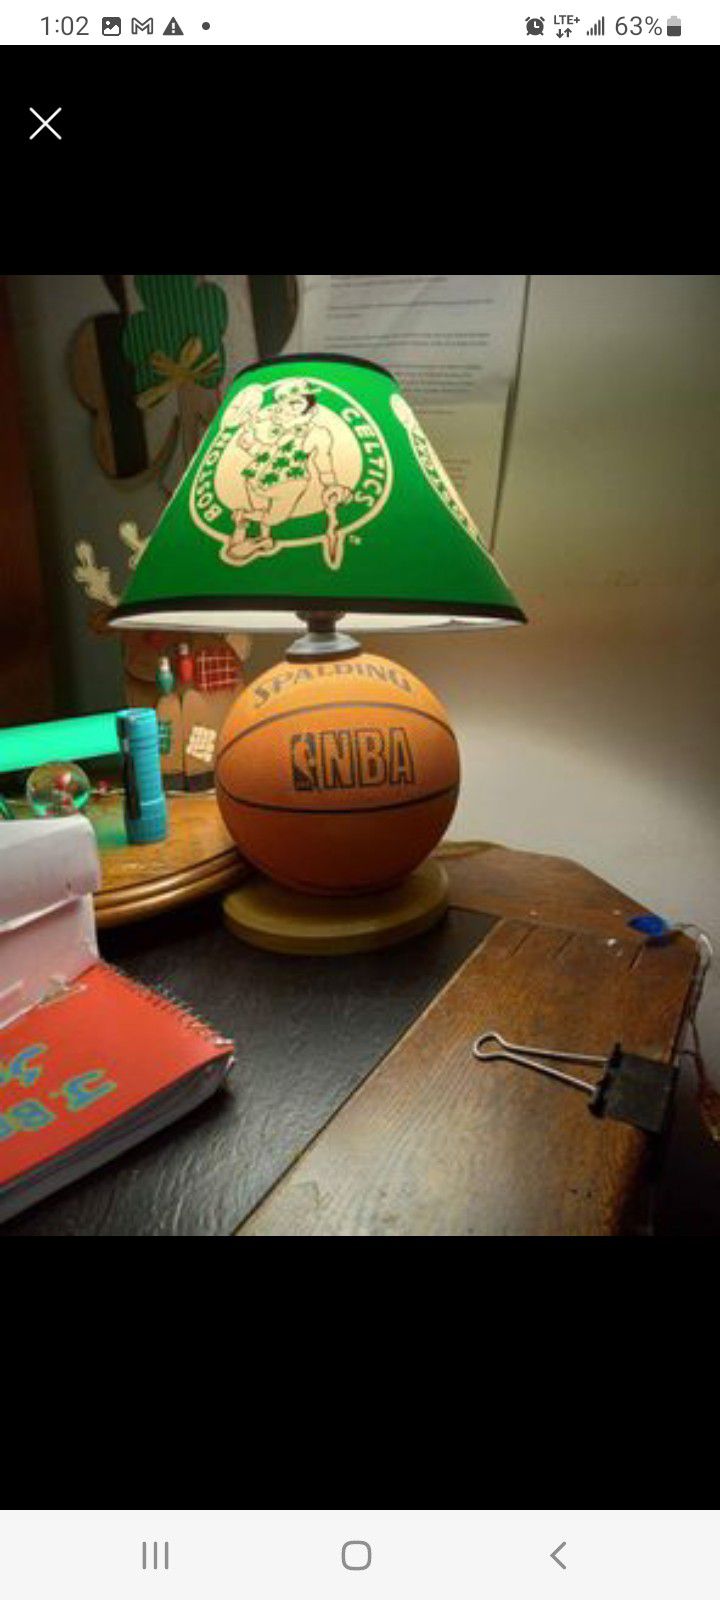 Antique Boston Celtics Lamp